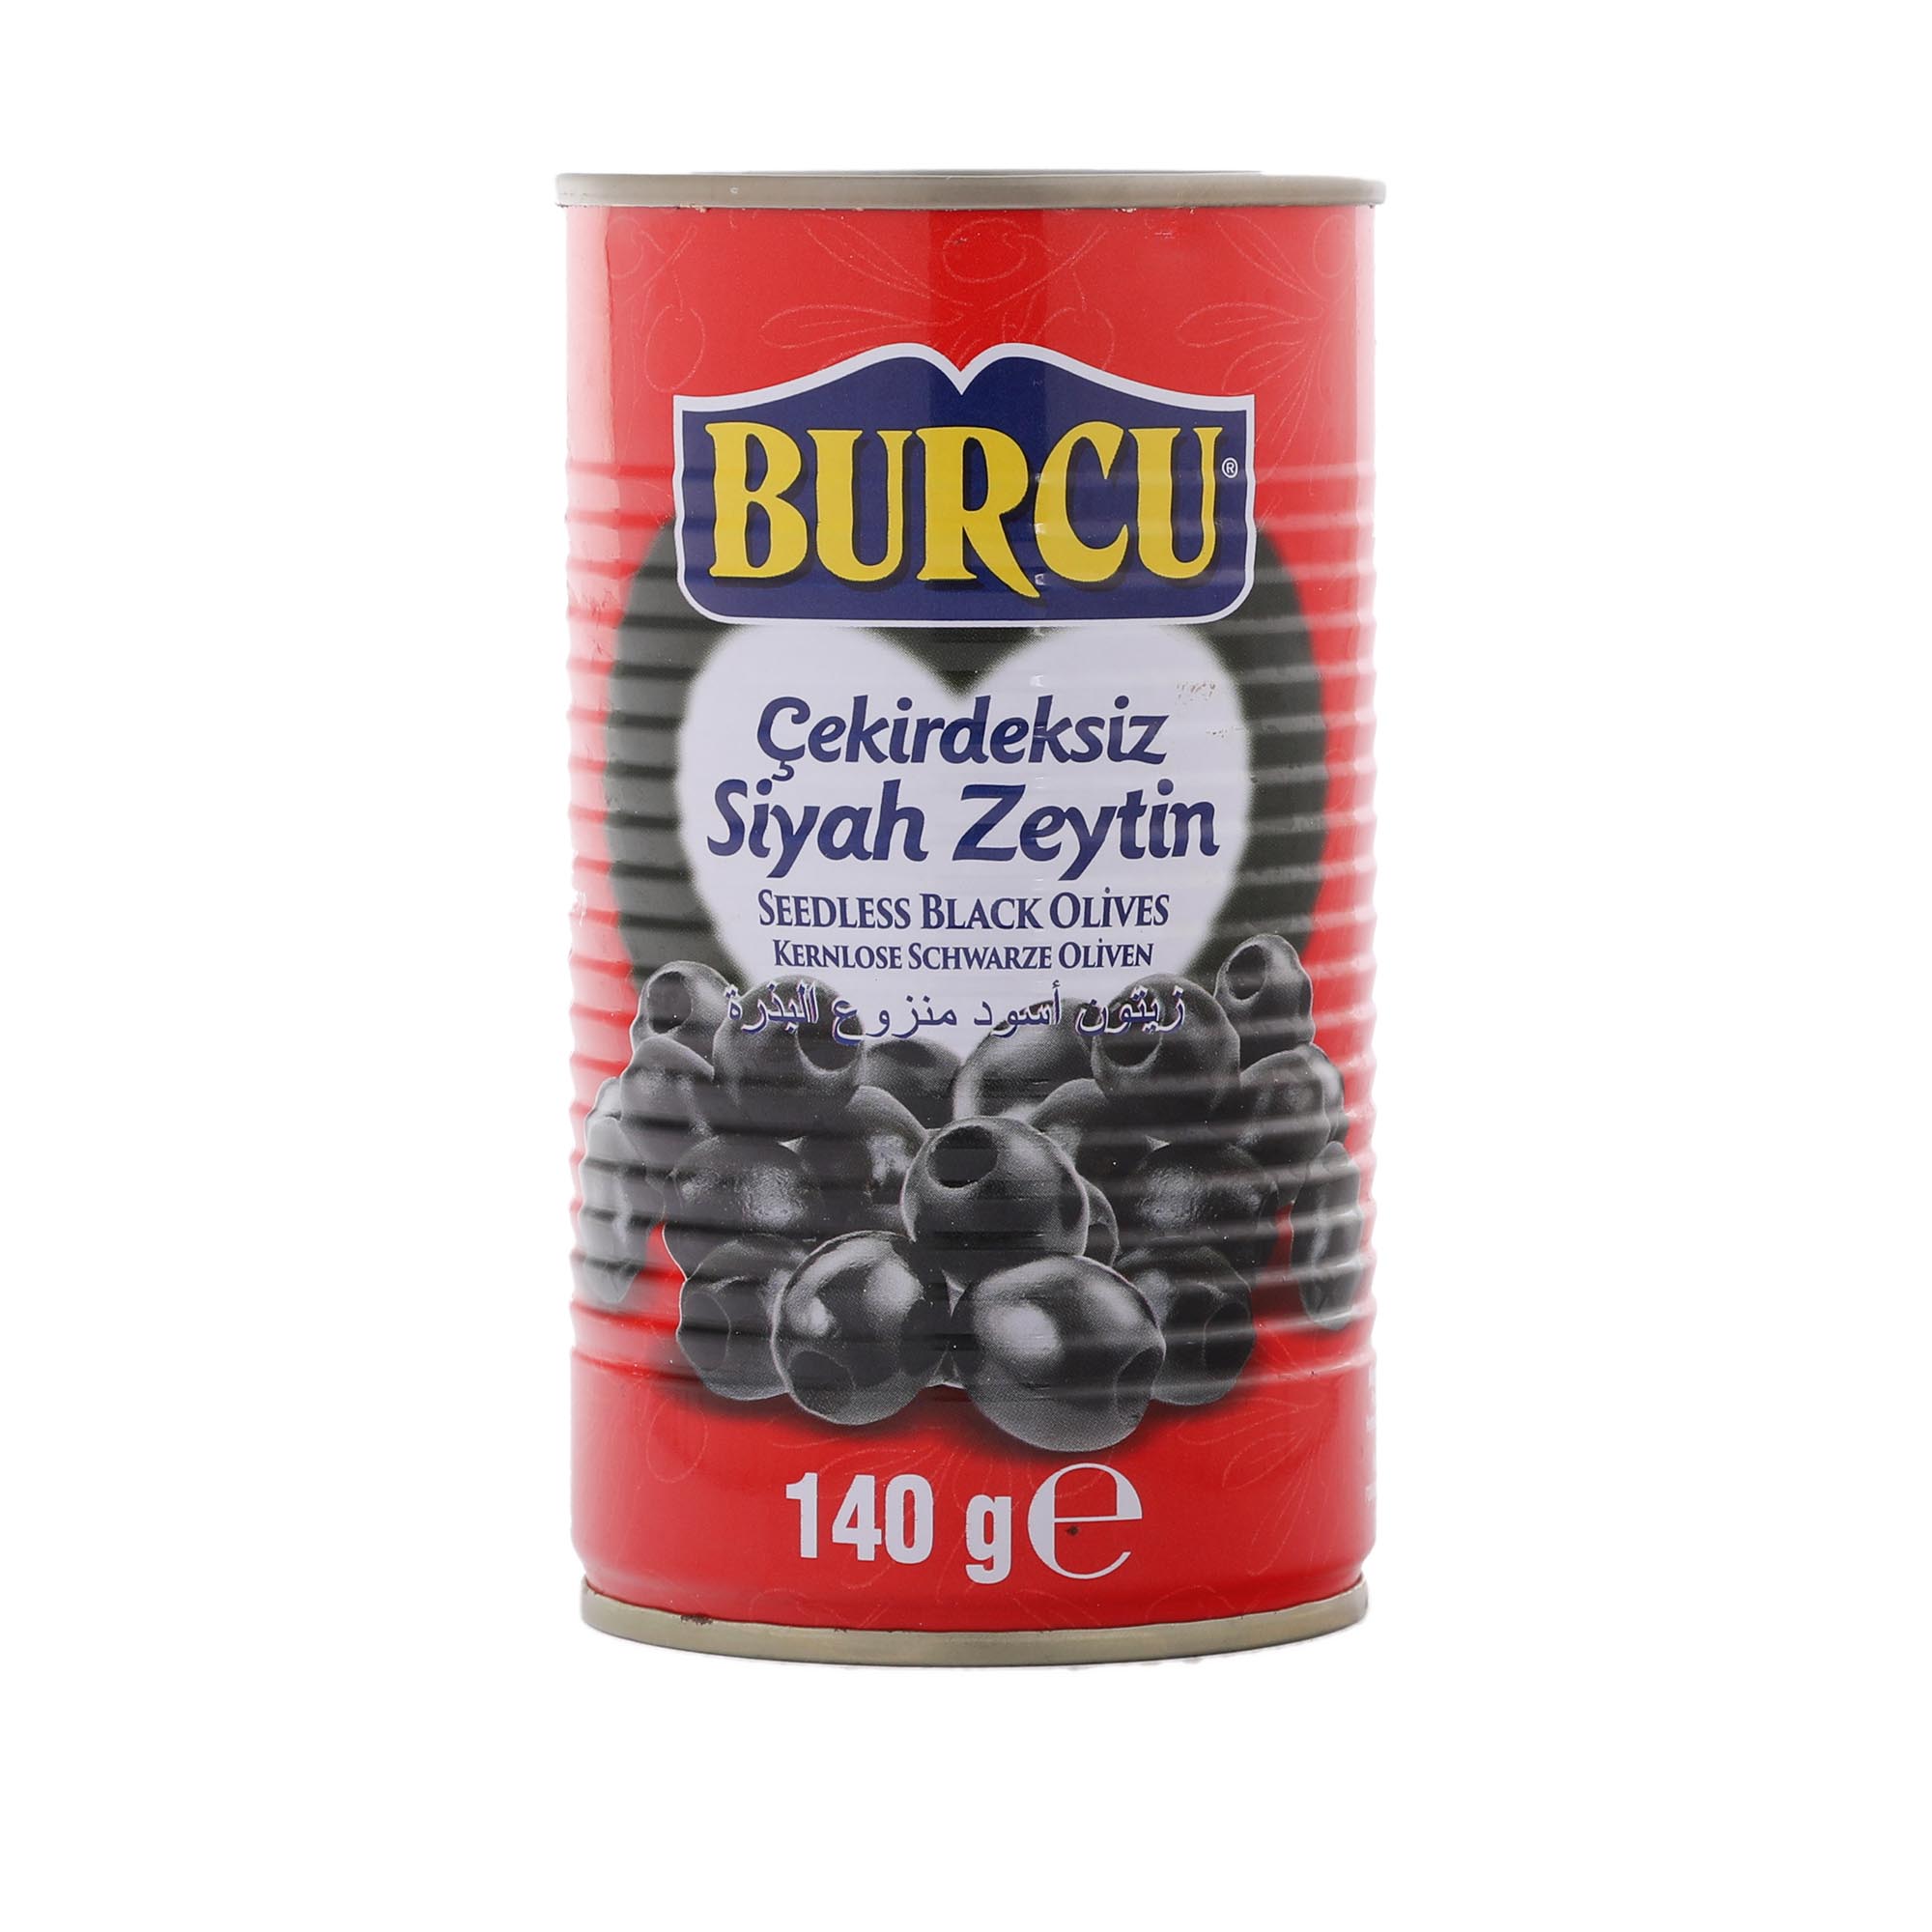 Оливки чёрные Burcu Без косточки 170 г оливки чёрные burcu цельные 170 г